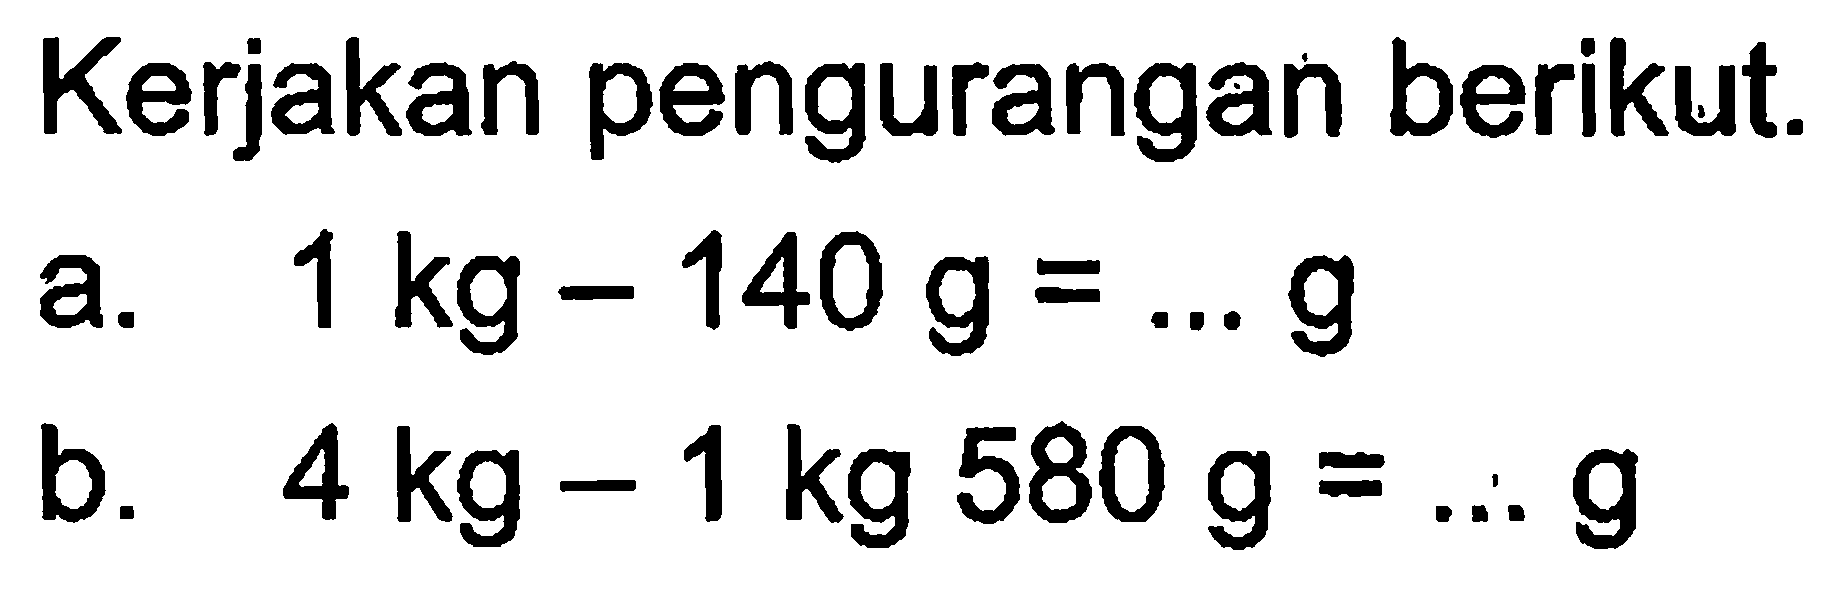 Kerjakan pengurangan berikut. a. 1kg - 140 g = ... g b. 4 kg 580 g = ... g